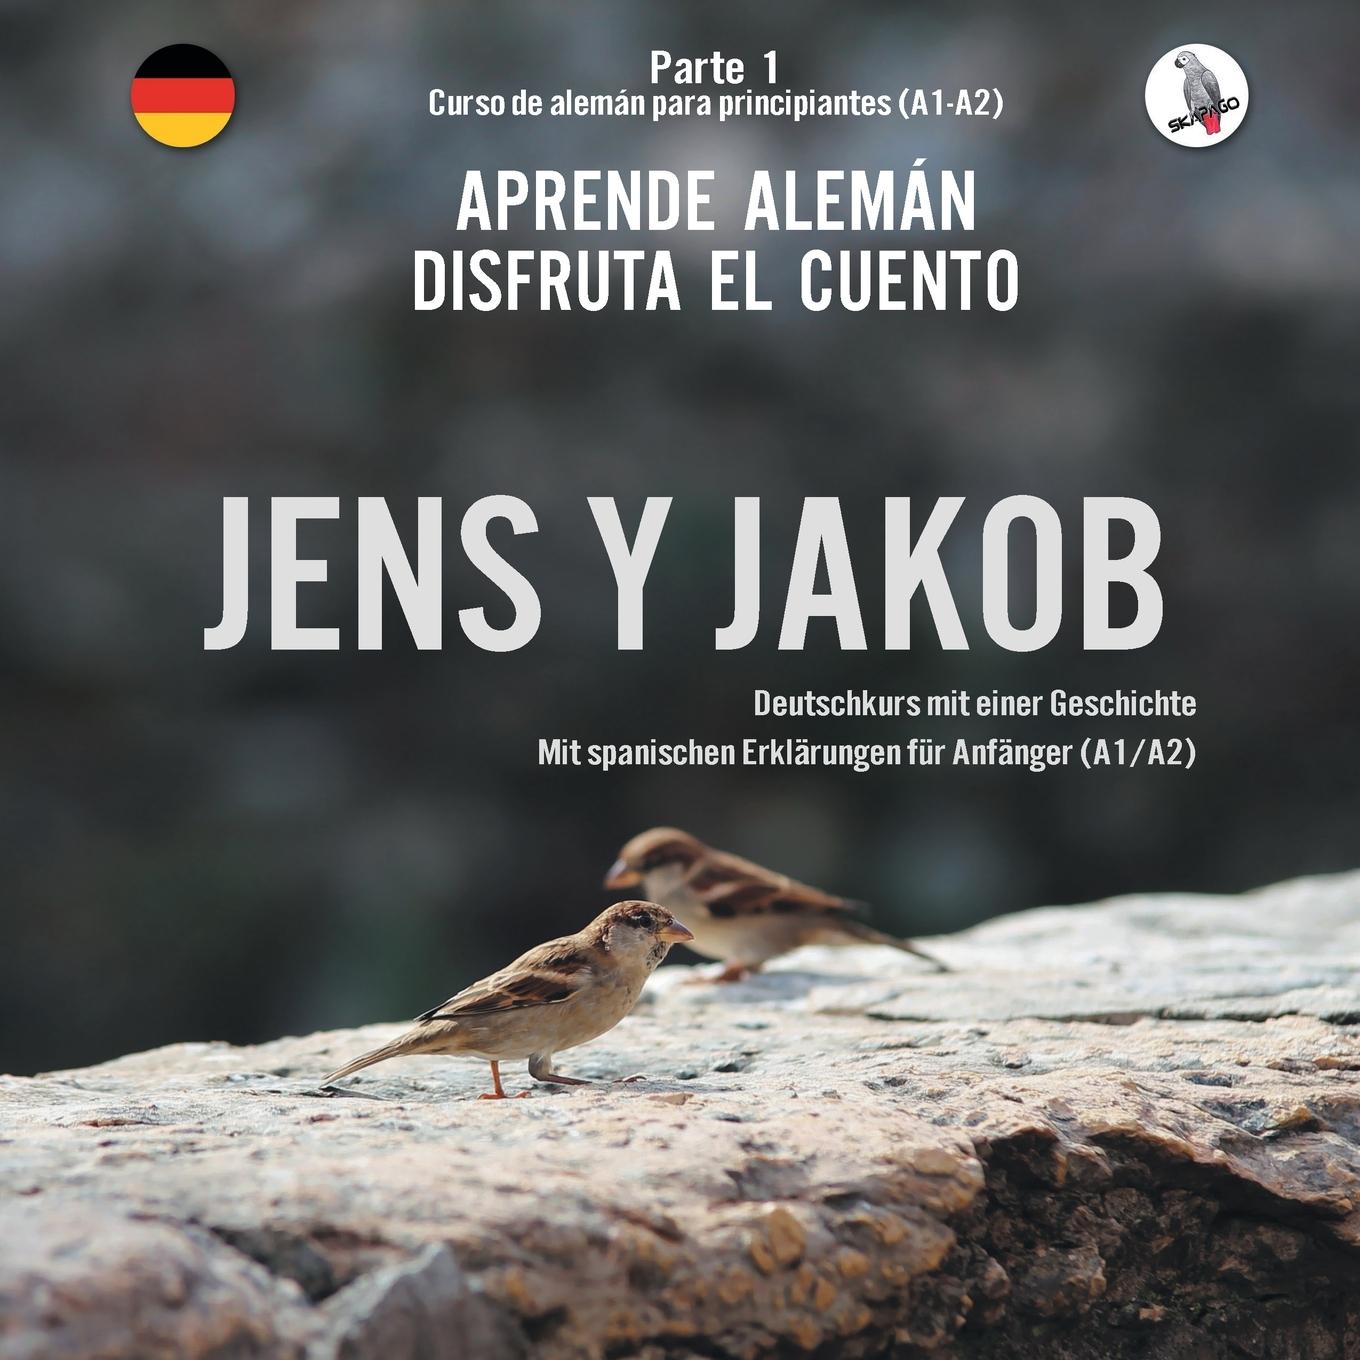 Kniha Jens y Jakob. Aprende alemán. Disfruta el cuento. Parte 1 - Curso de alemán para principiantes 